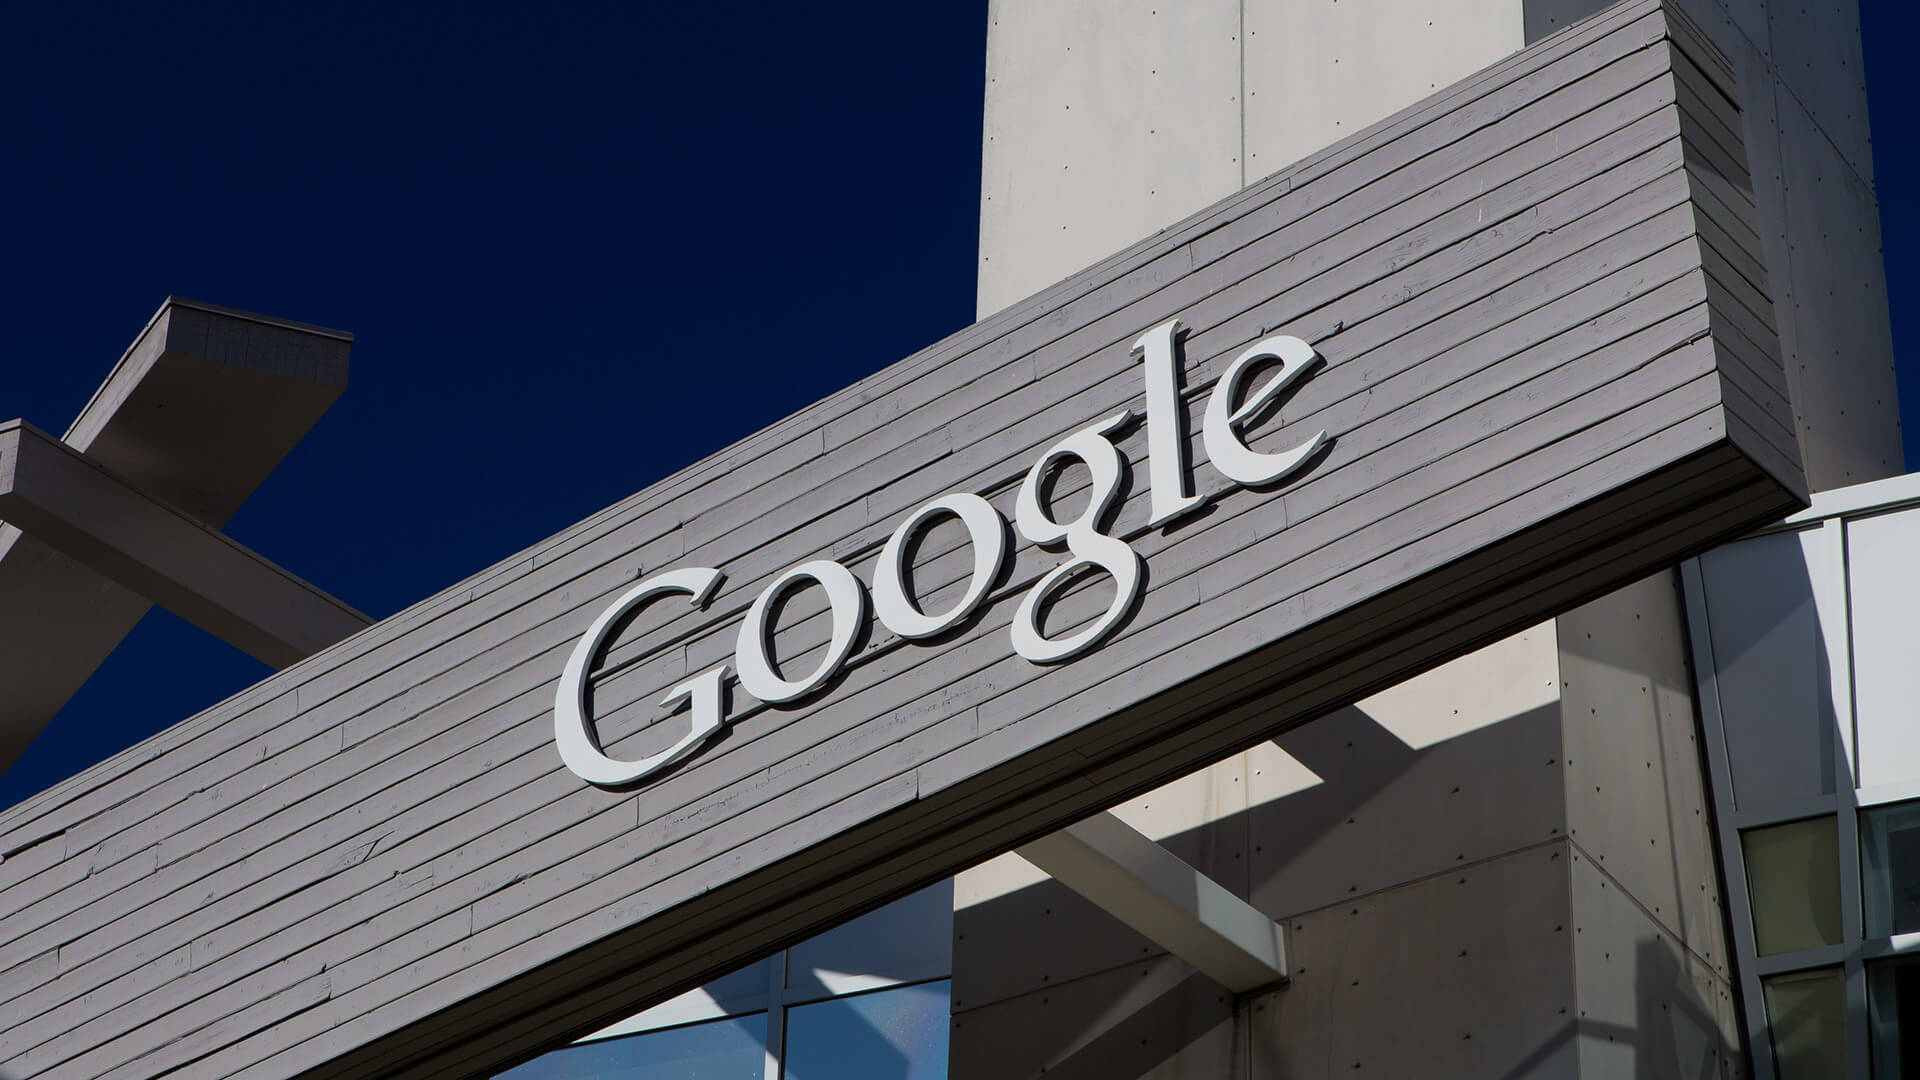 Google cerrará Google Compare productos en EE. UU. Y Reino Unido el 23 de marzo